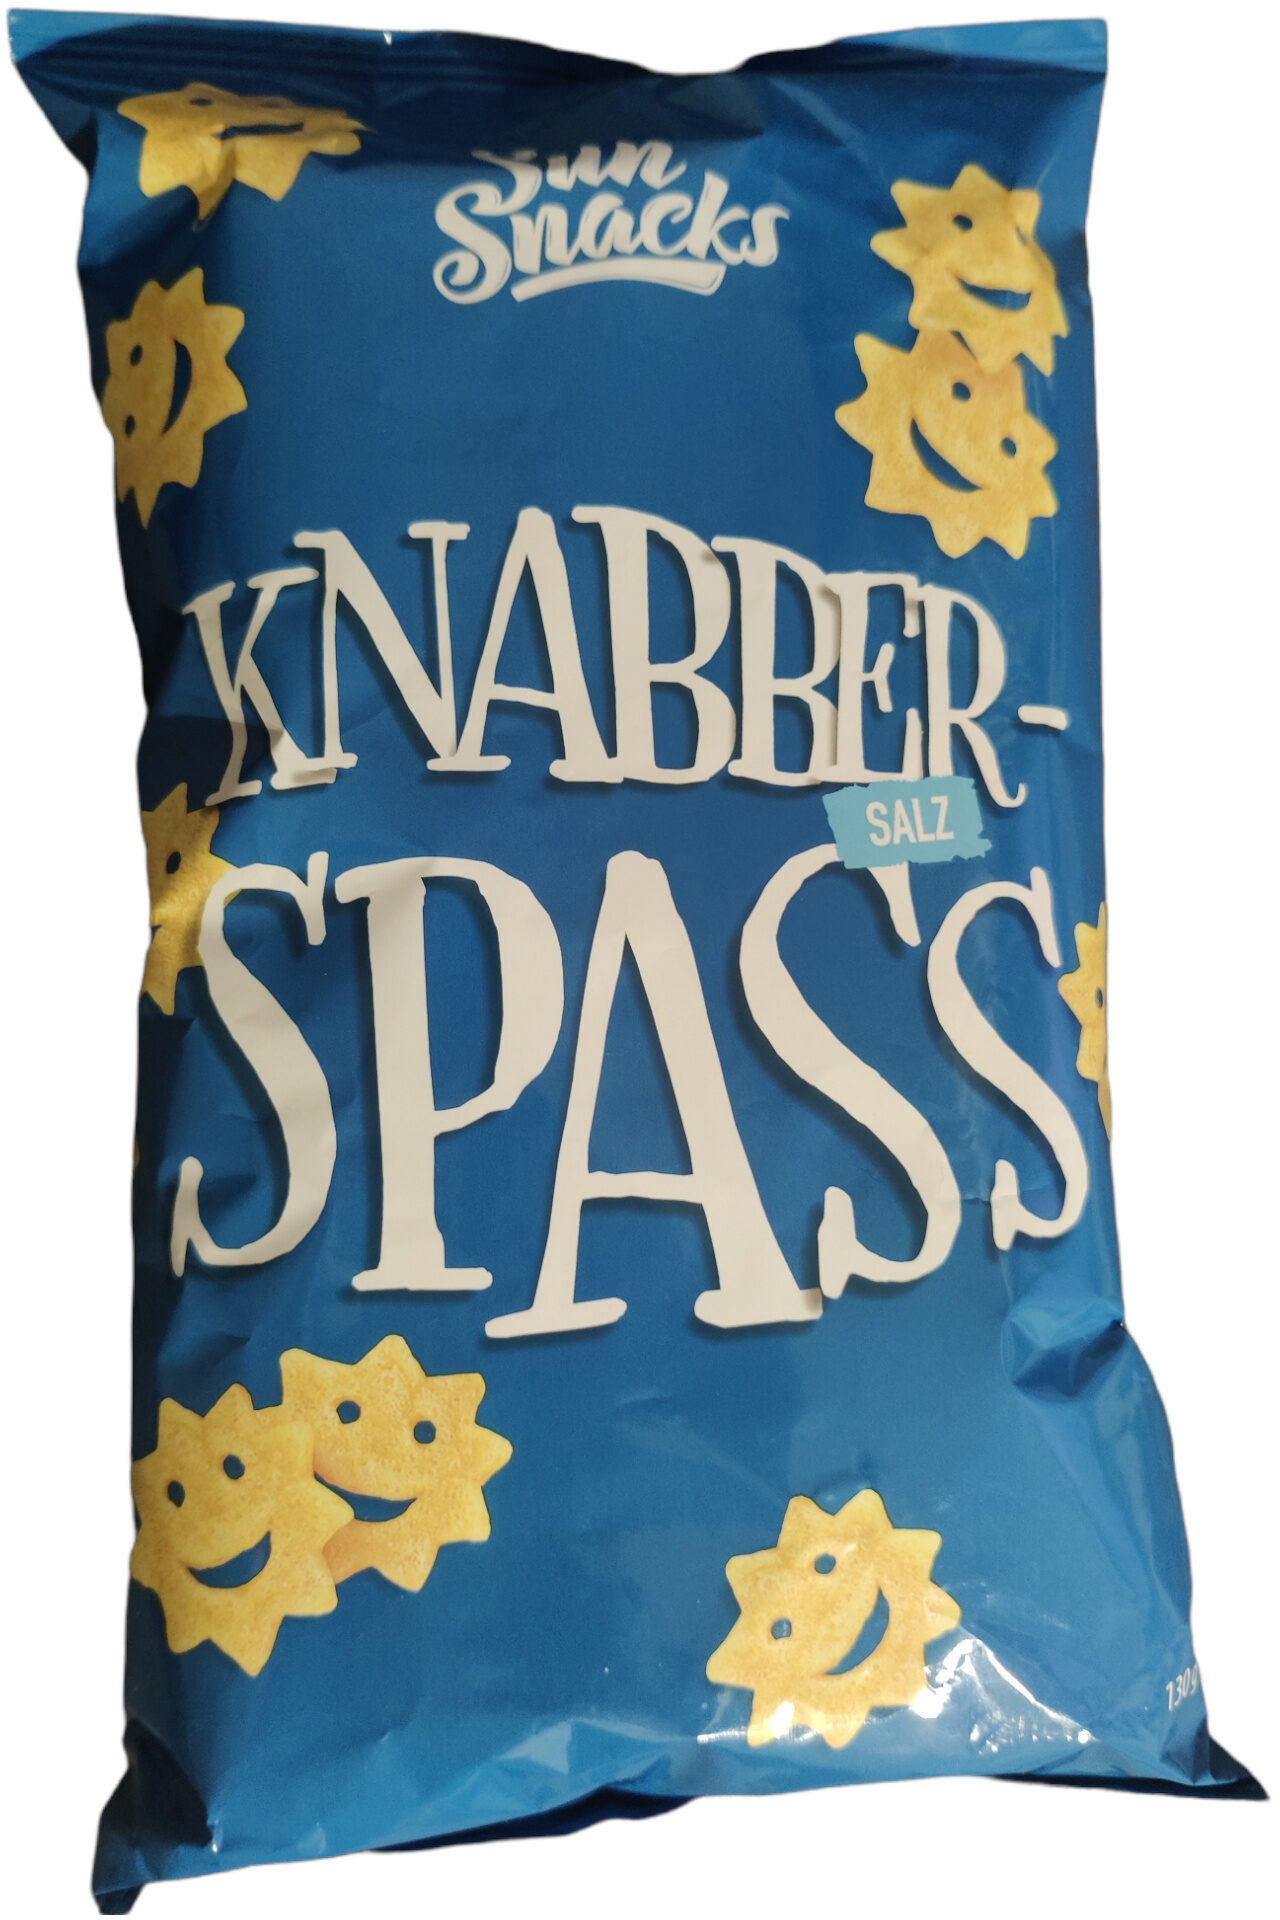 Knabber-spass - Produkt